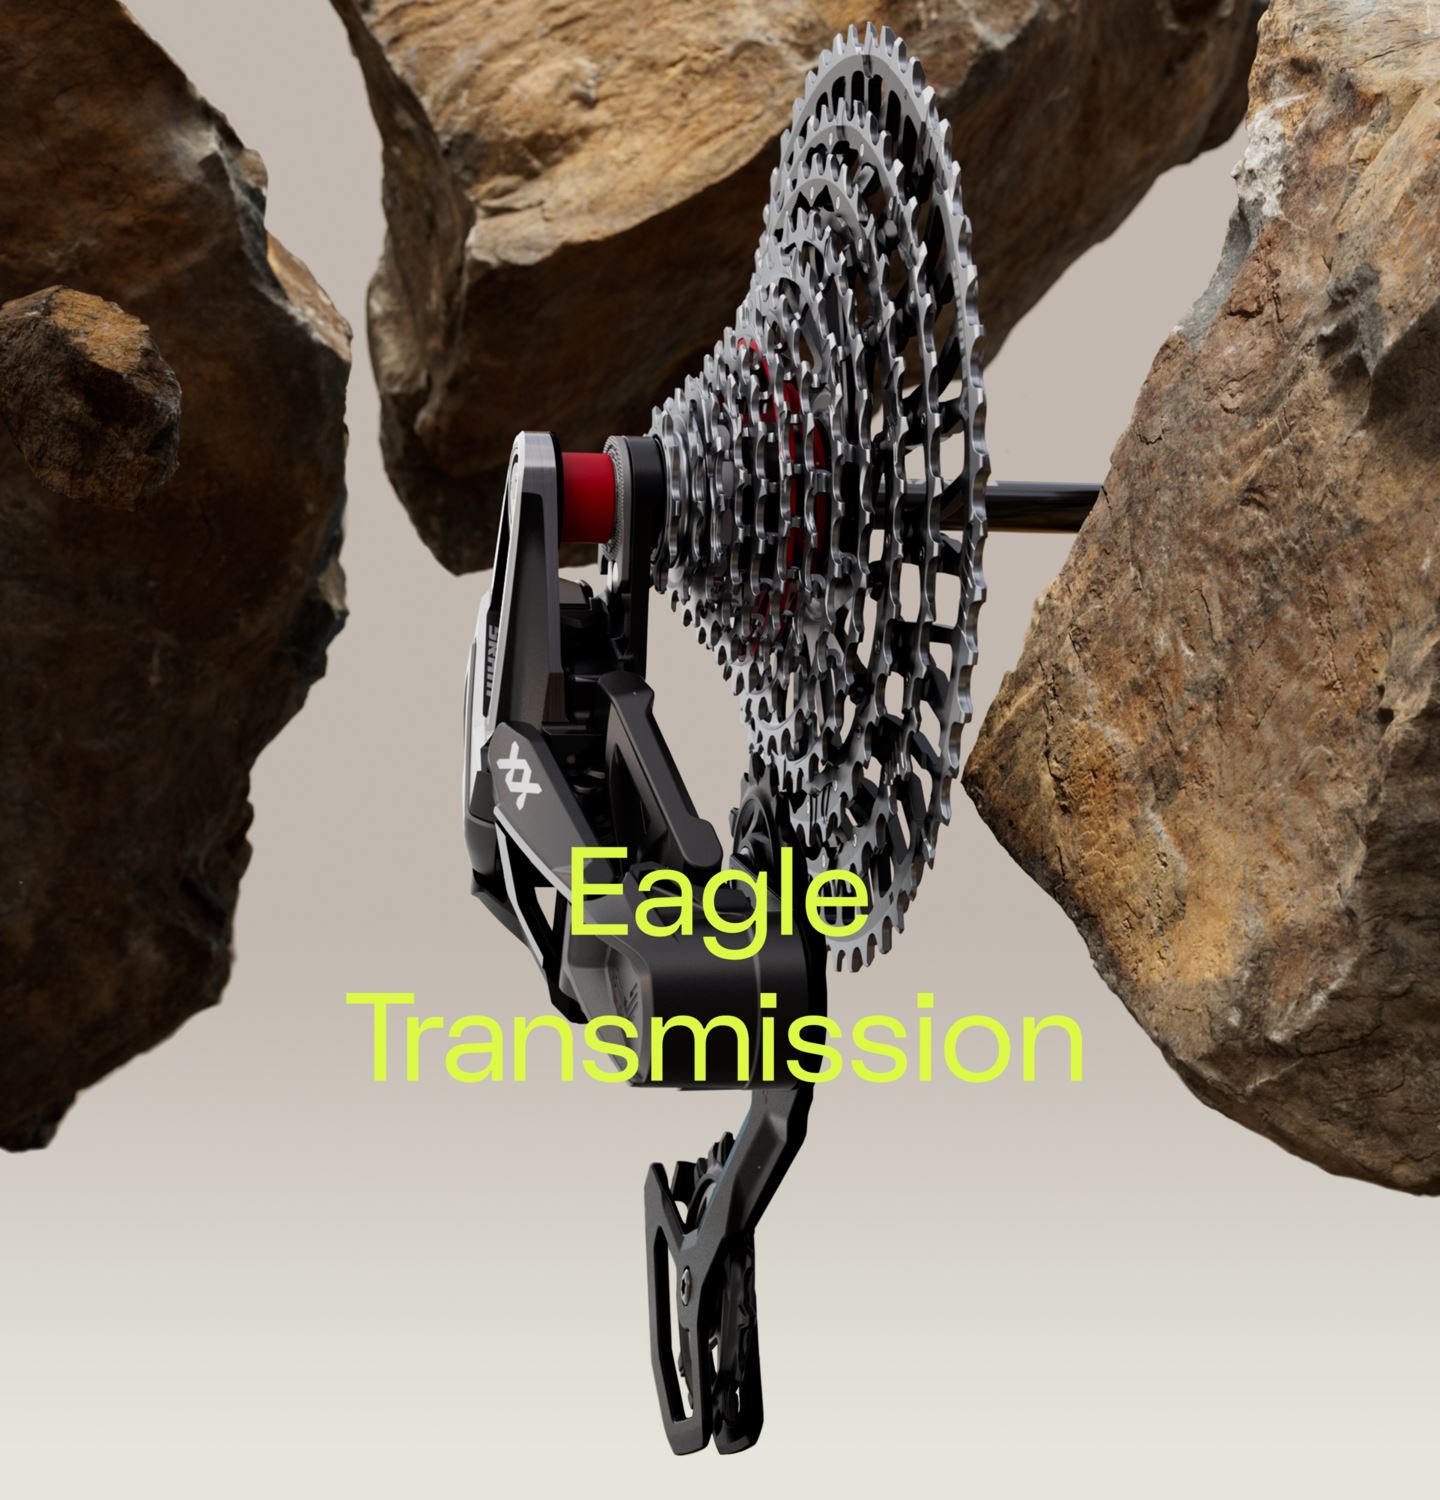 Eagle Transmission Derailleur floating amongst rocks